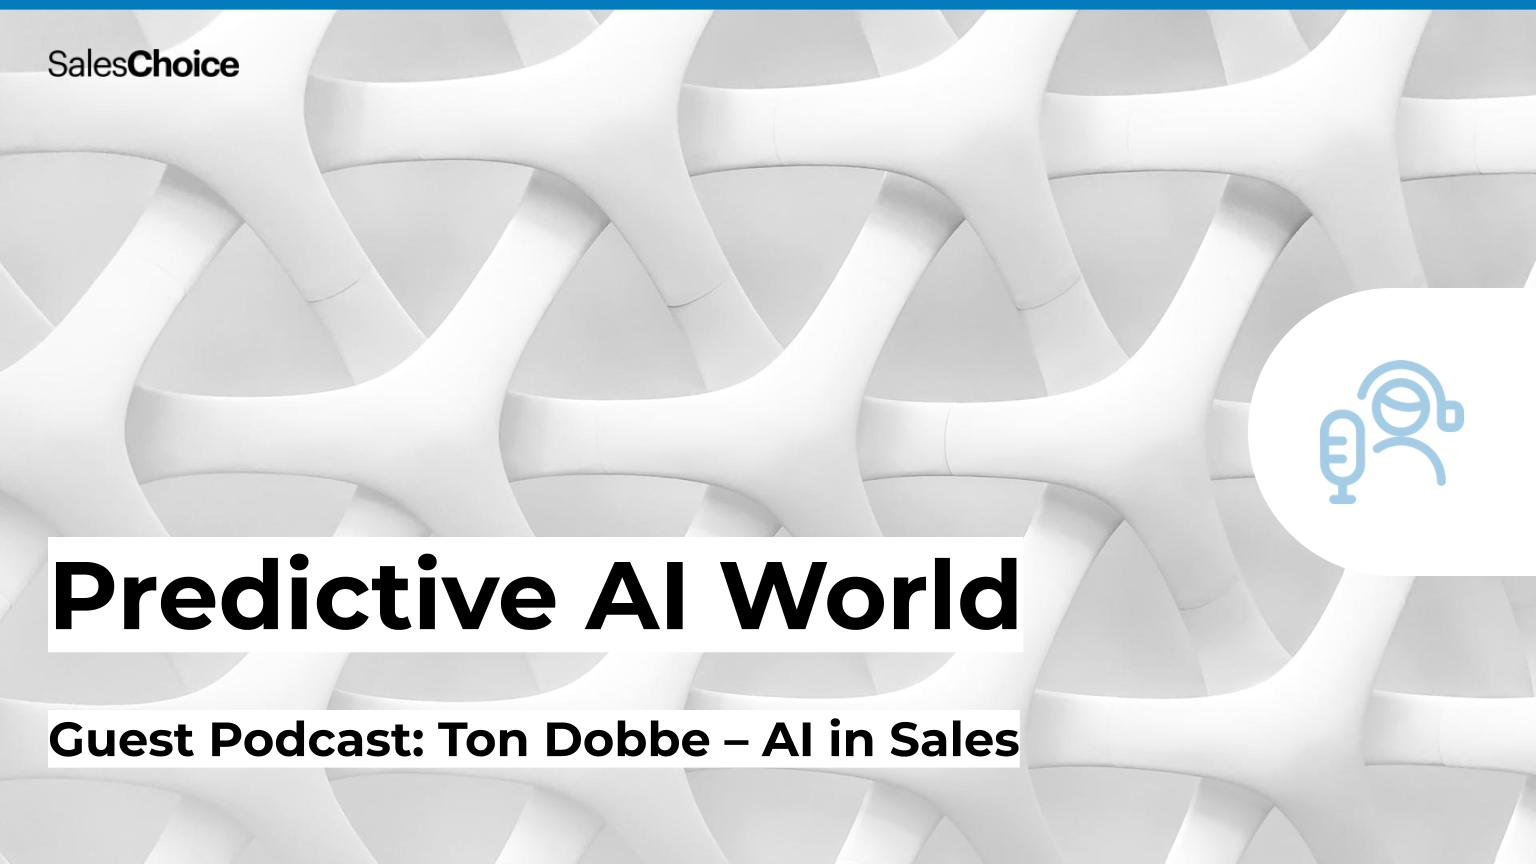 Podcast: Predictive AI World - Ton Dobbe